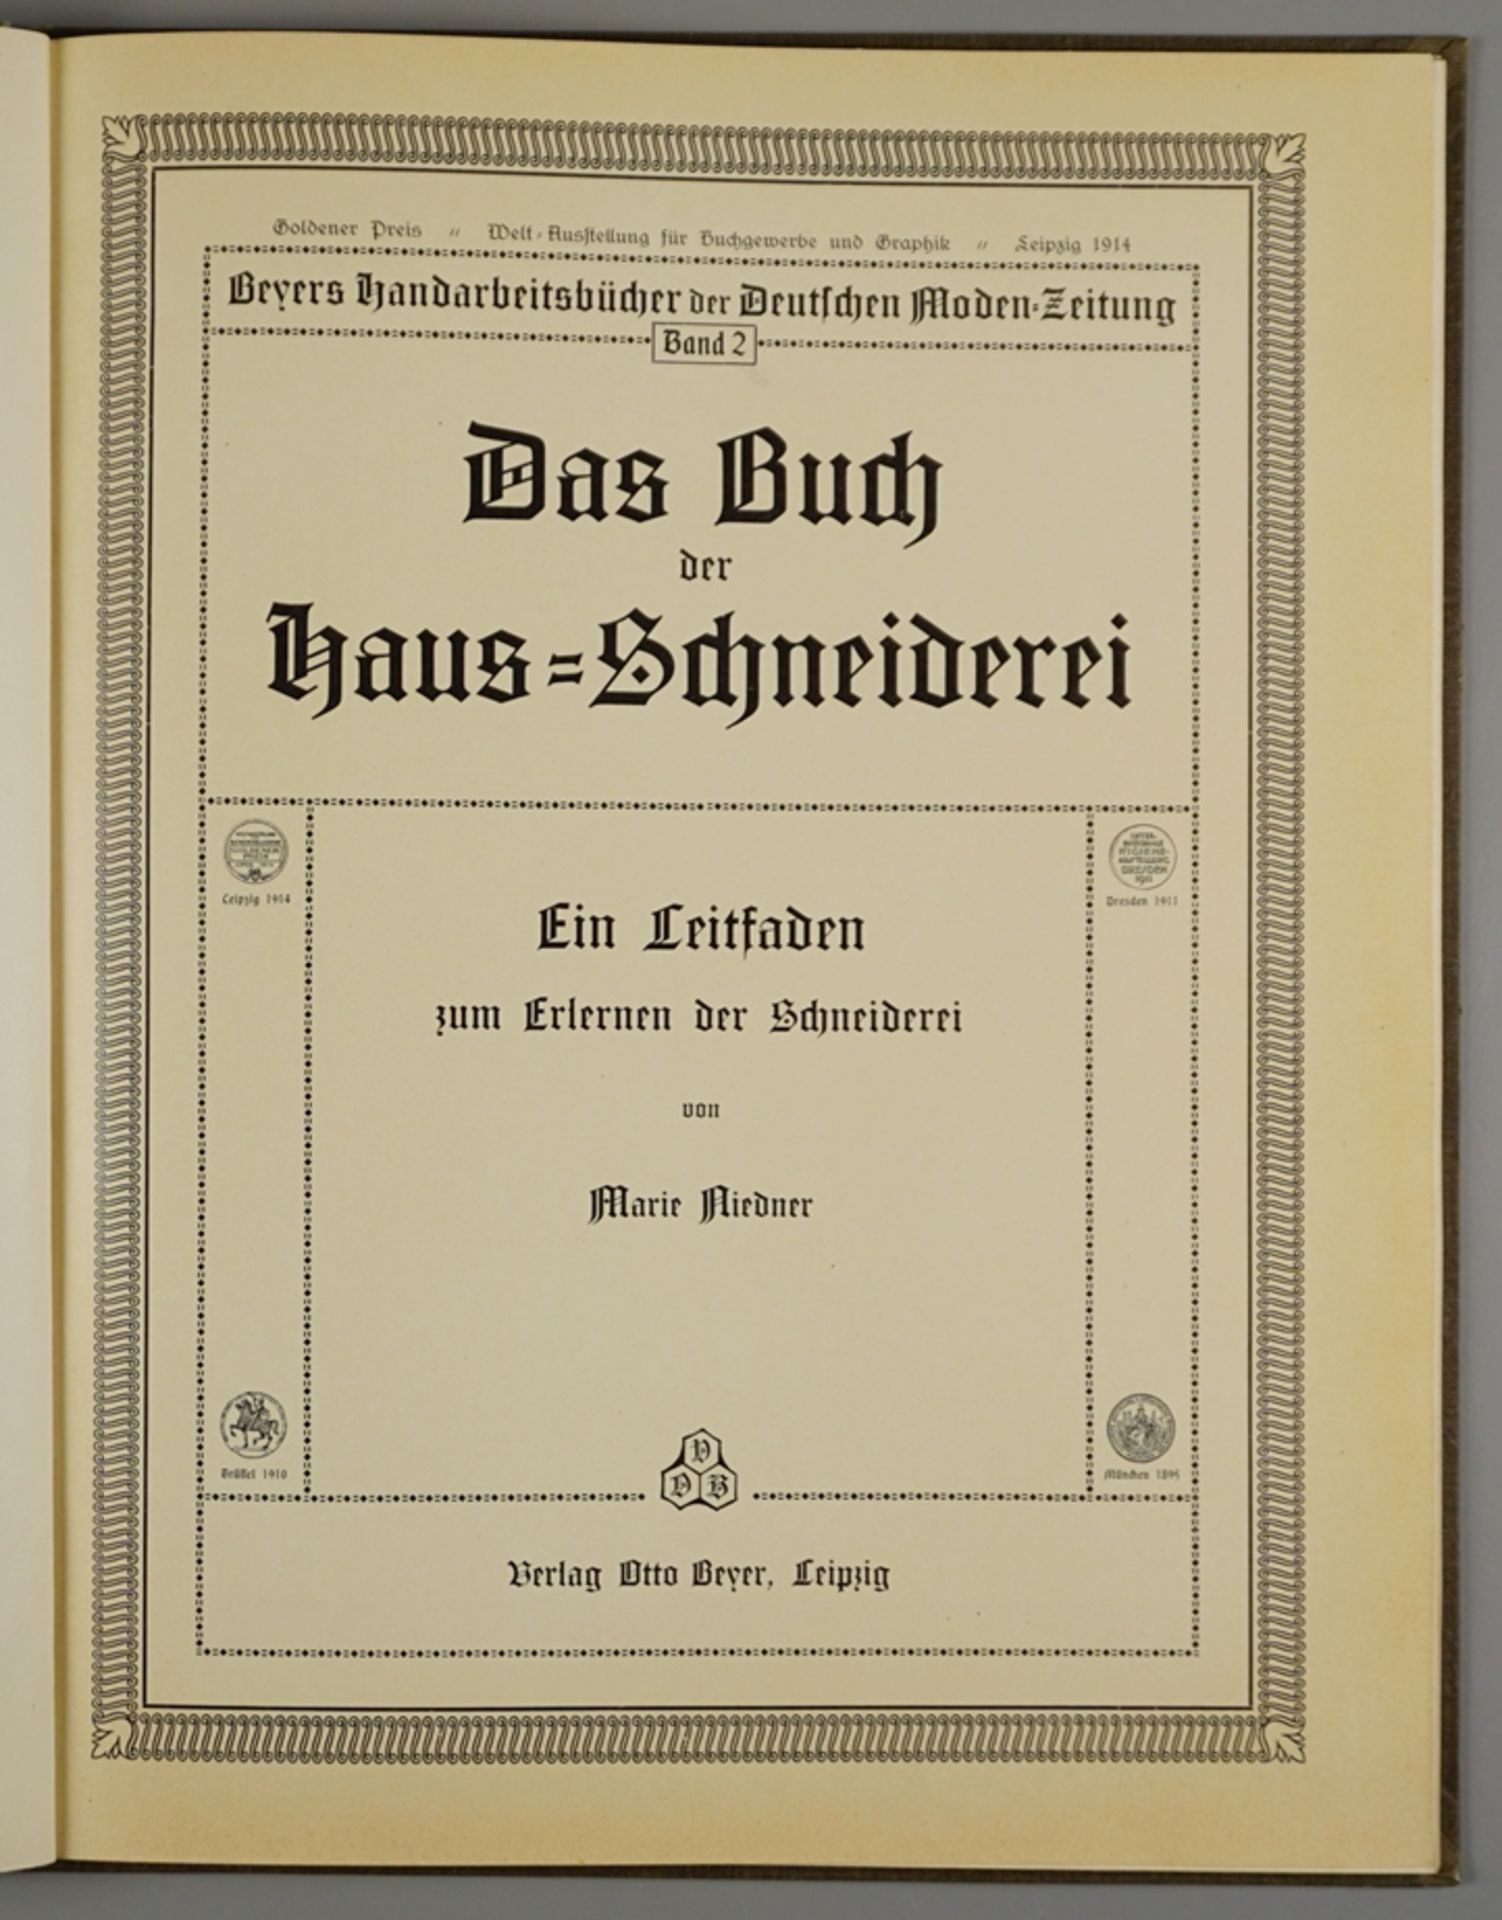 Das Buch der Haus-Schneiderei, Leitfaden zum Erlernen der Schneiderei von Marie Niedner, 1914 - Bild 2 aus 3